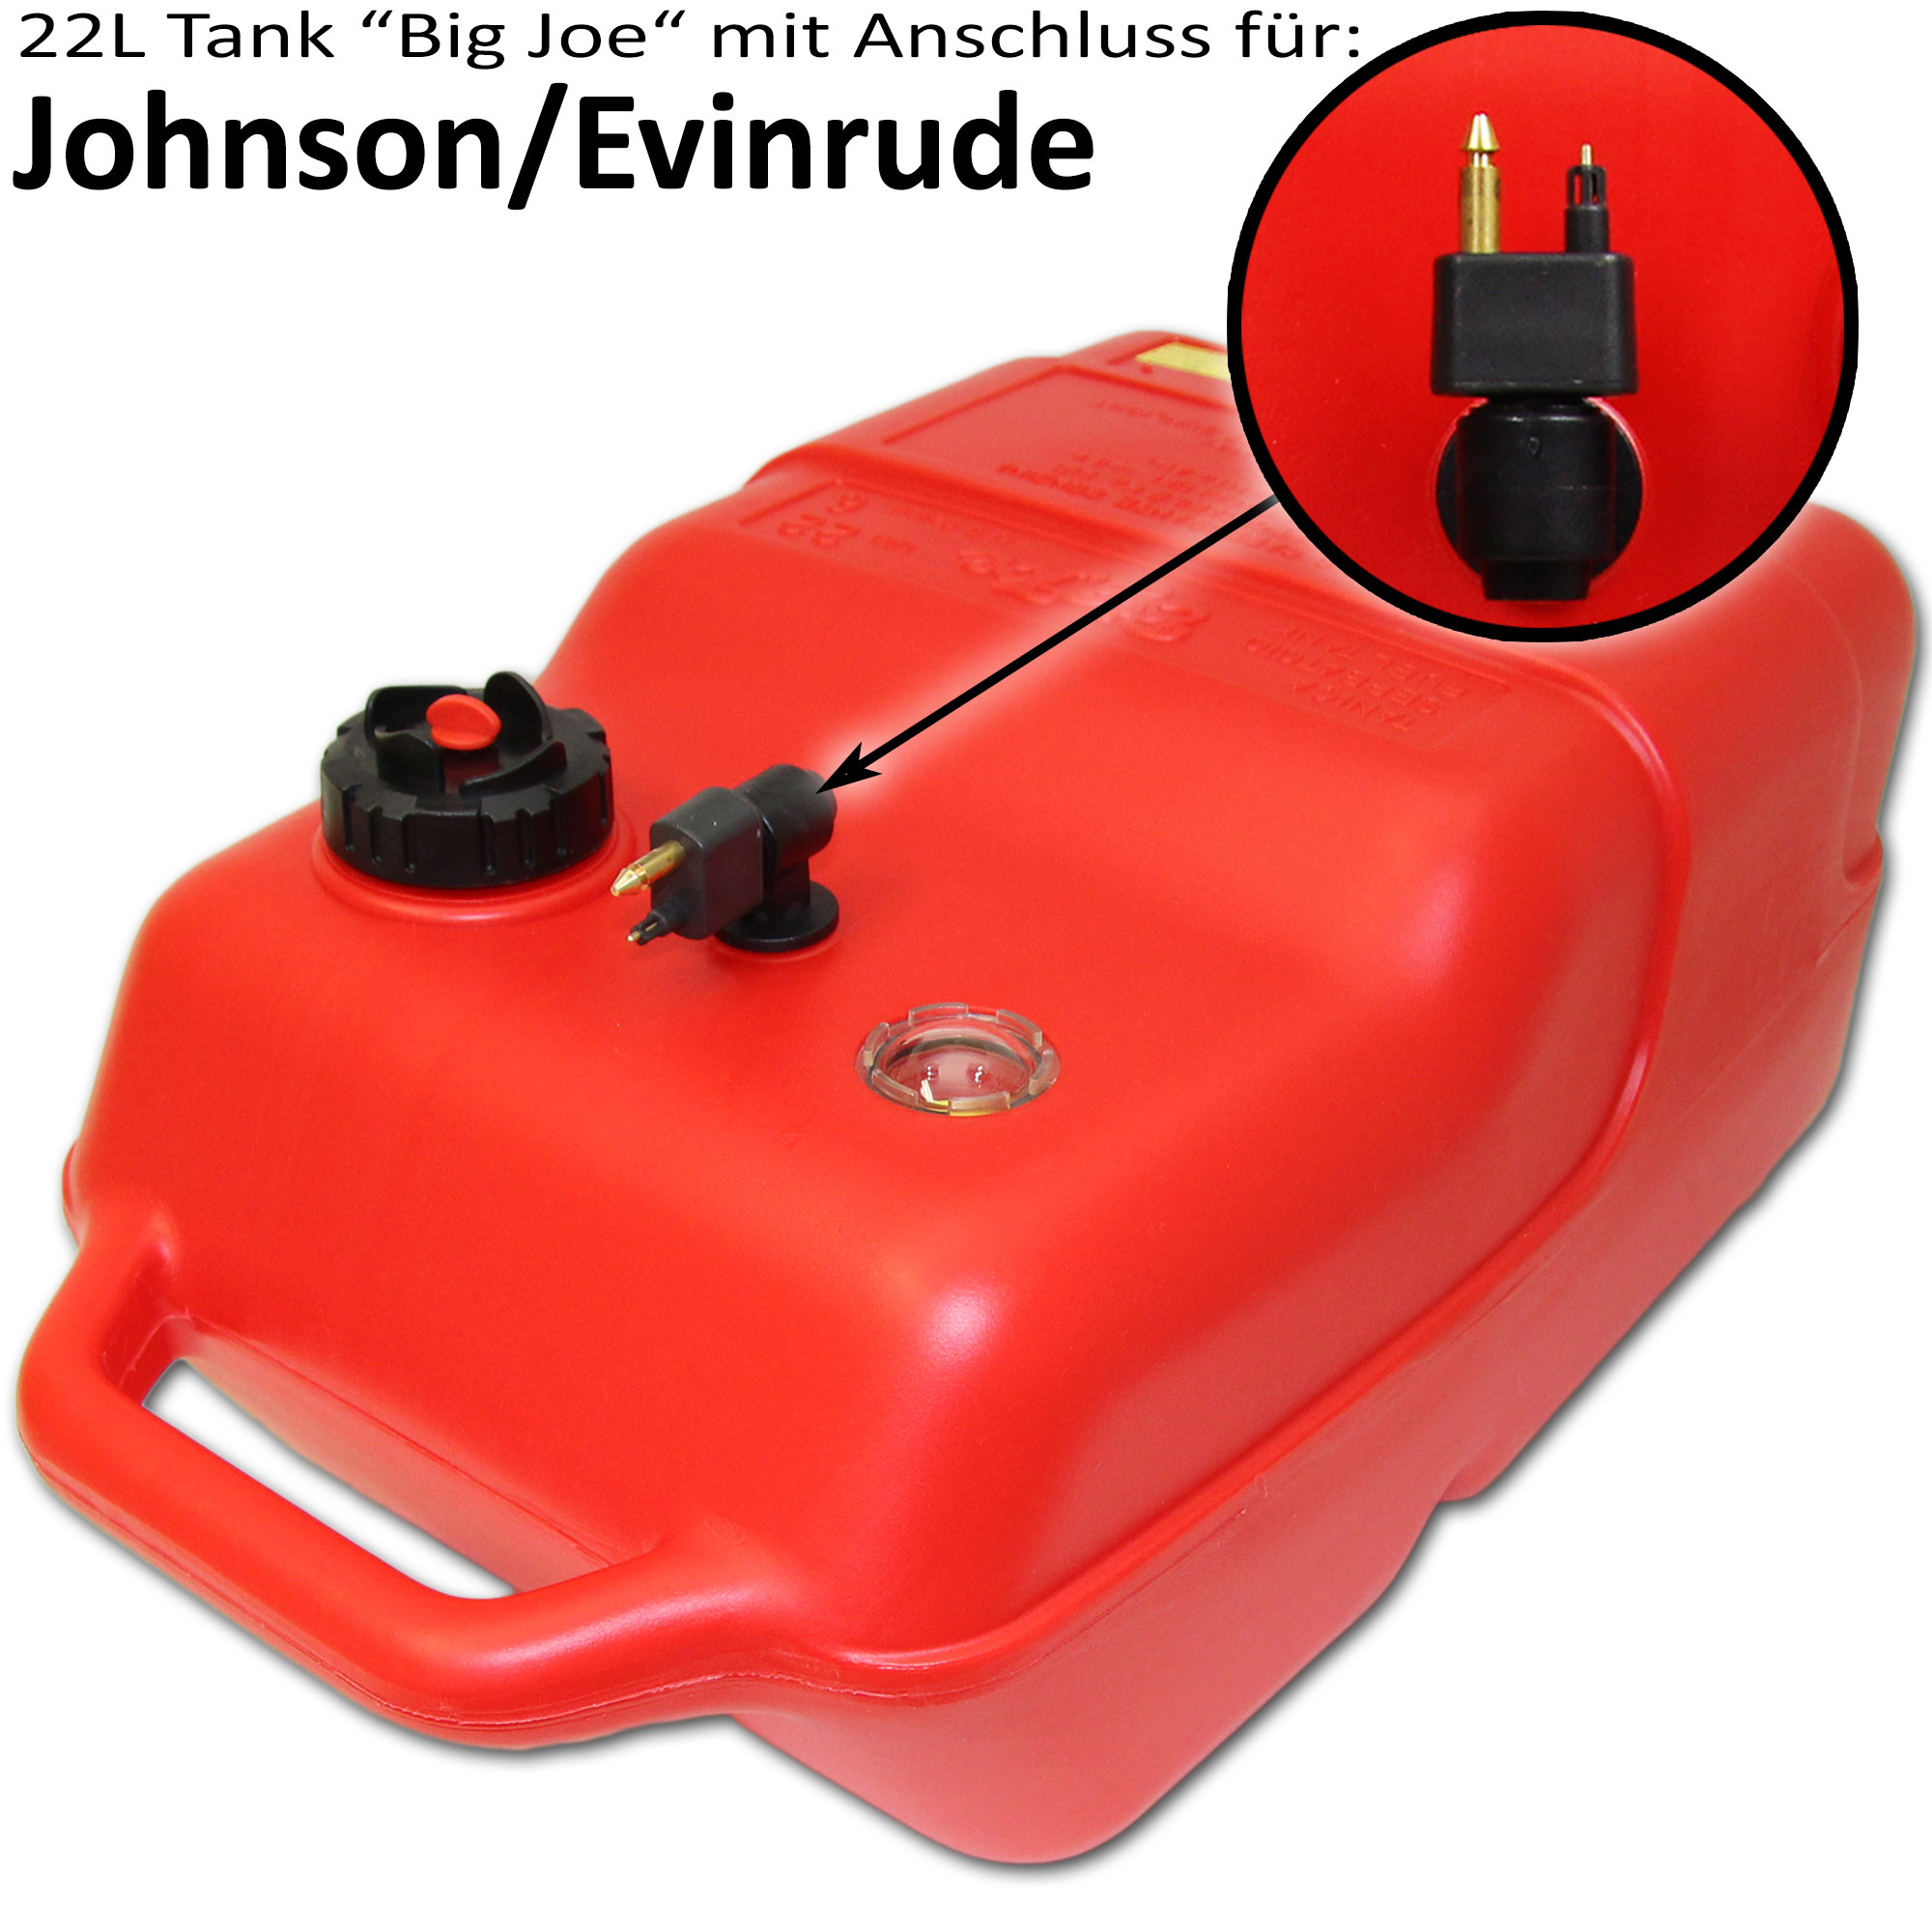 Kraftstofftank rot mit Johnson & Evinrude Anschluss / Füllstandsanzeige manuell